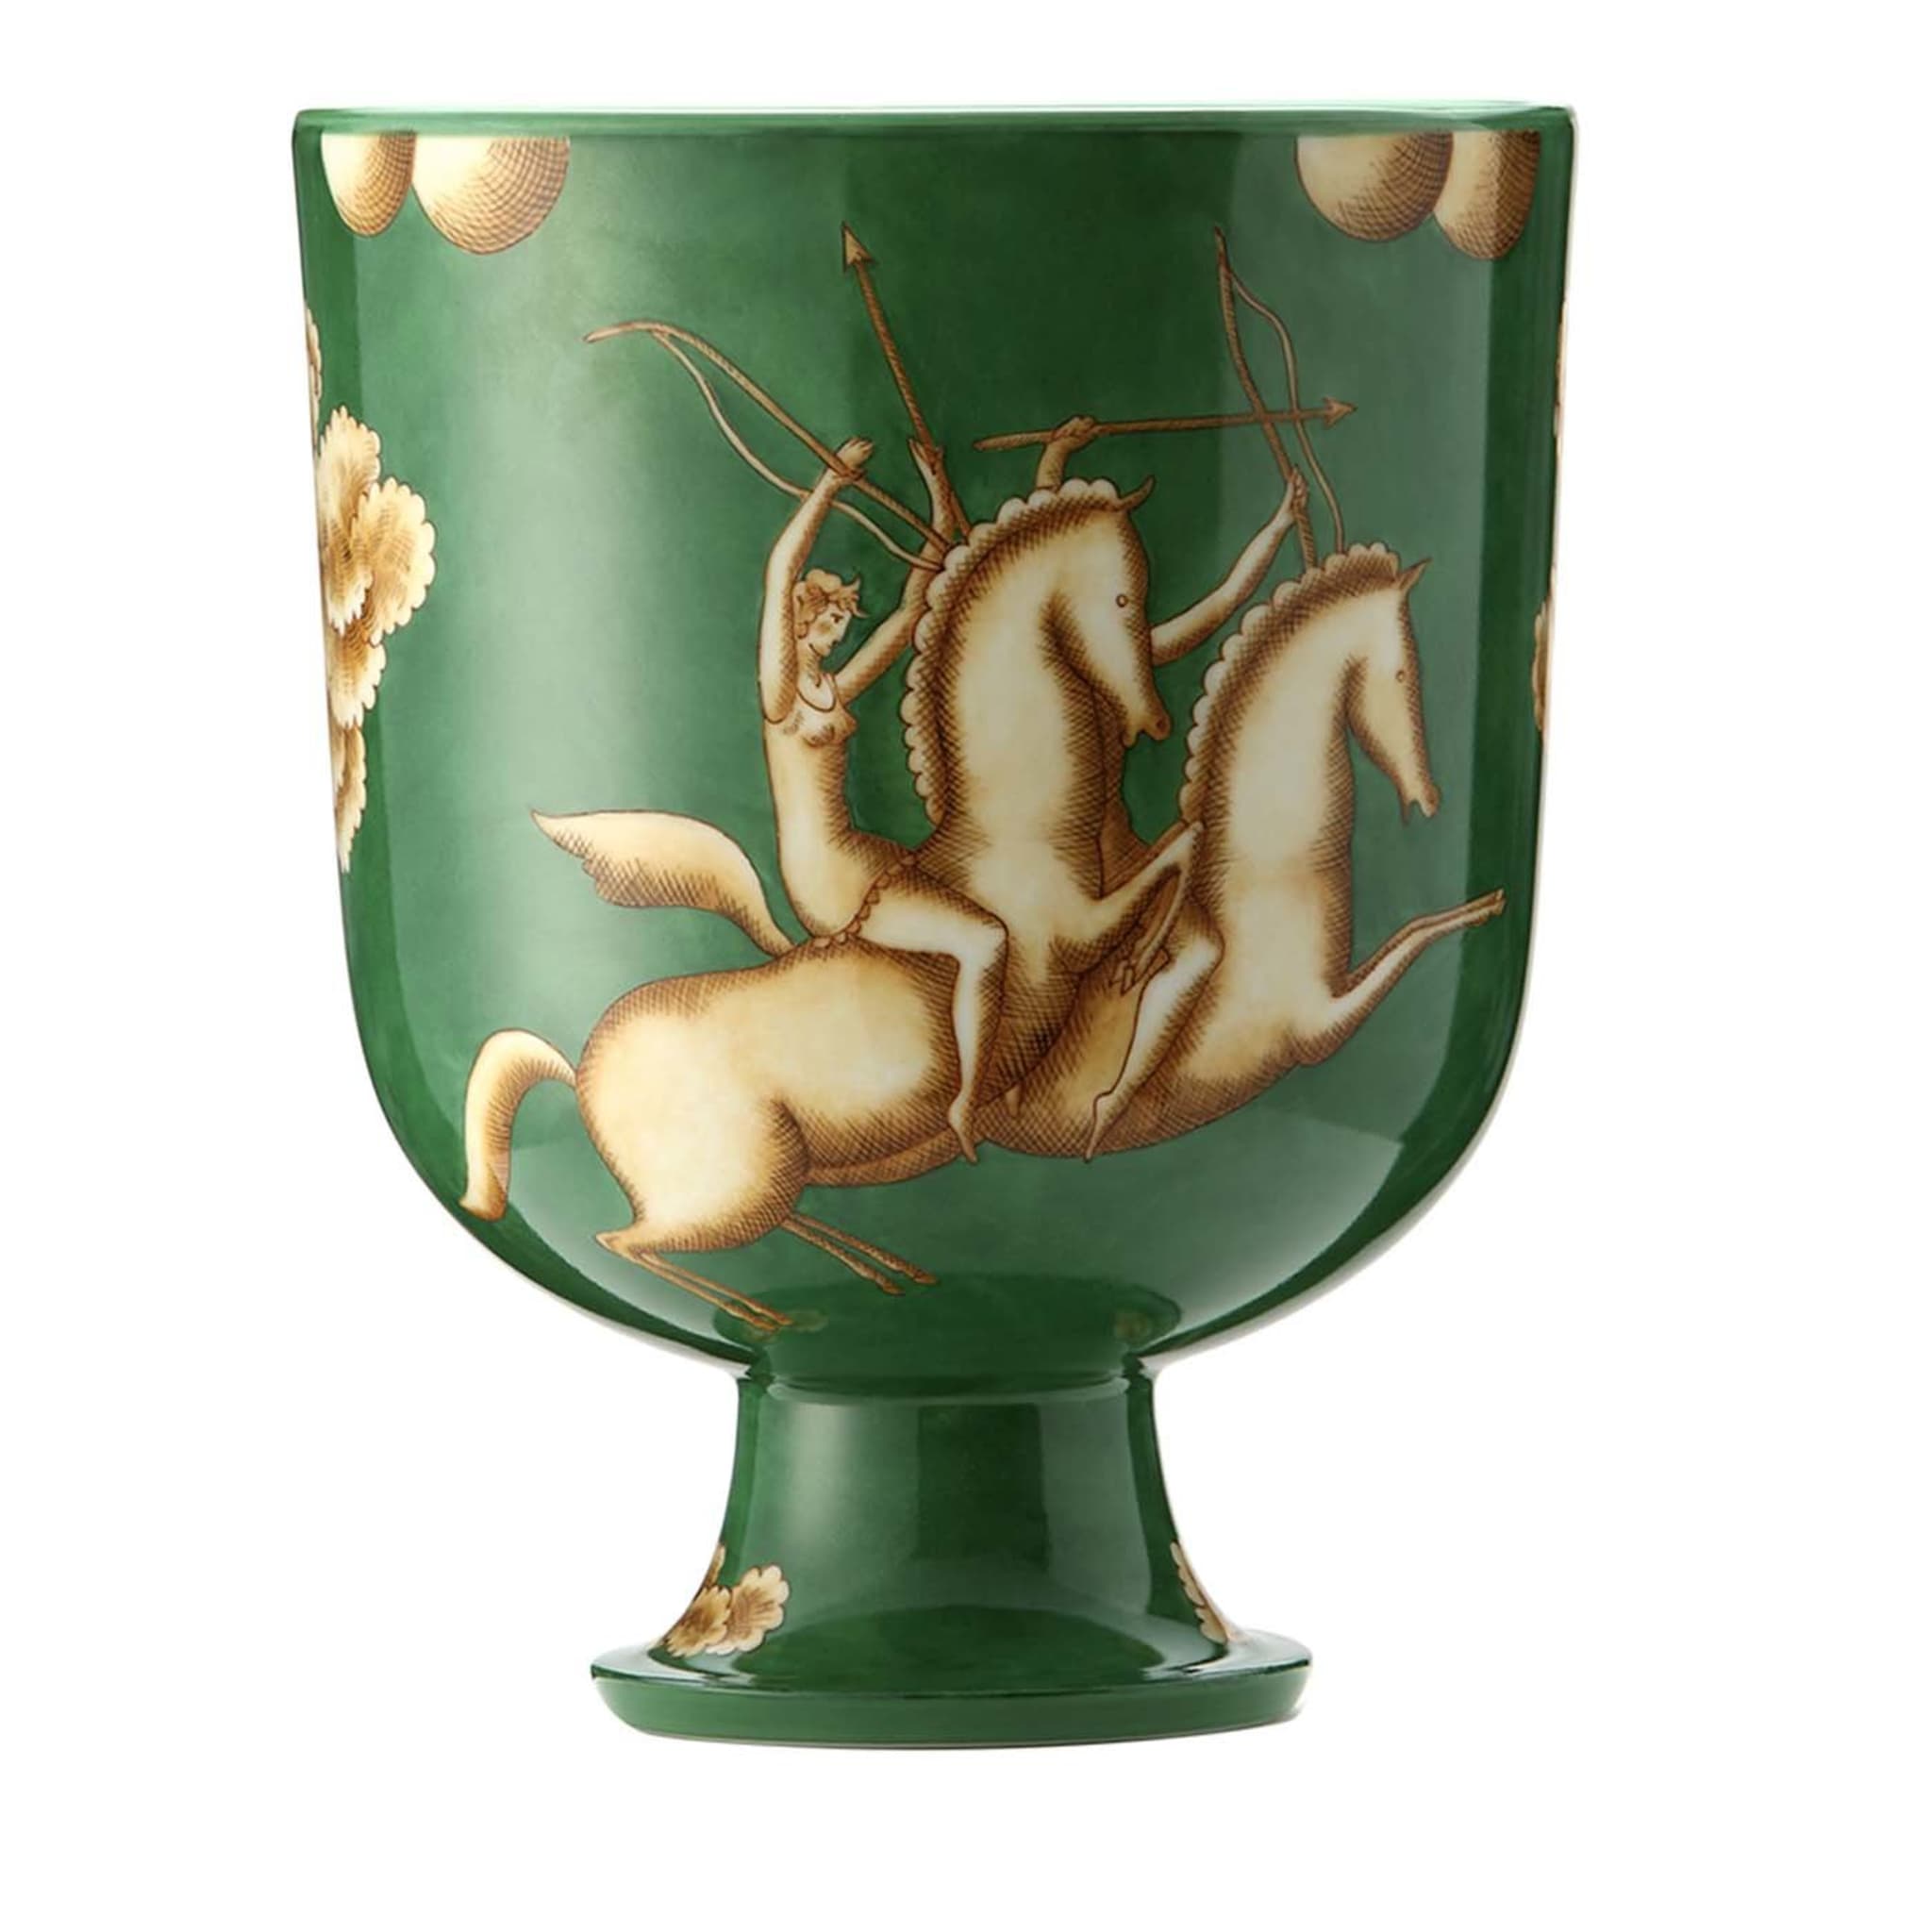 La Venatoria Orcino Cachepot Vase - Limited Edition by Gio Ponti - Main view